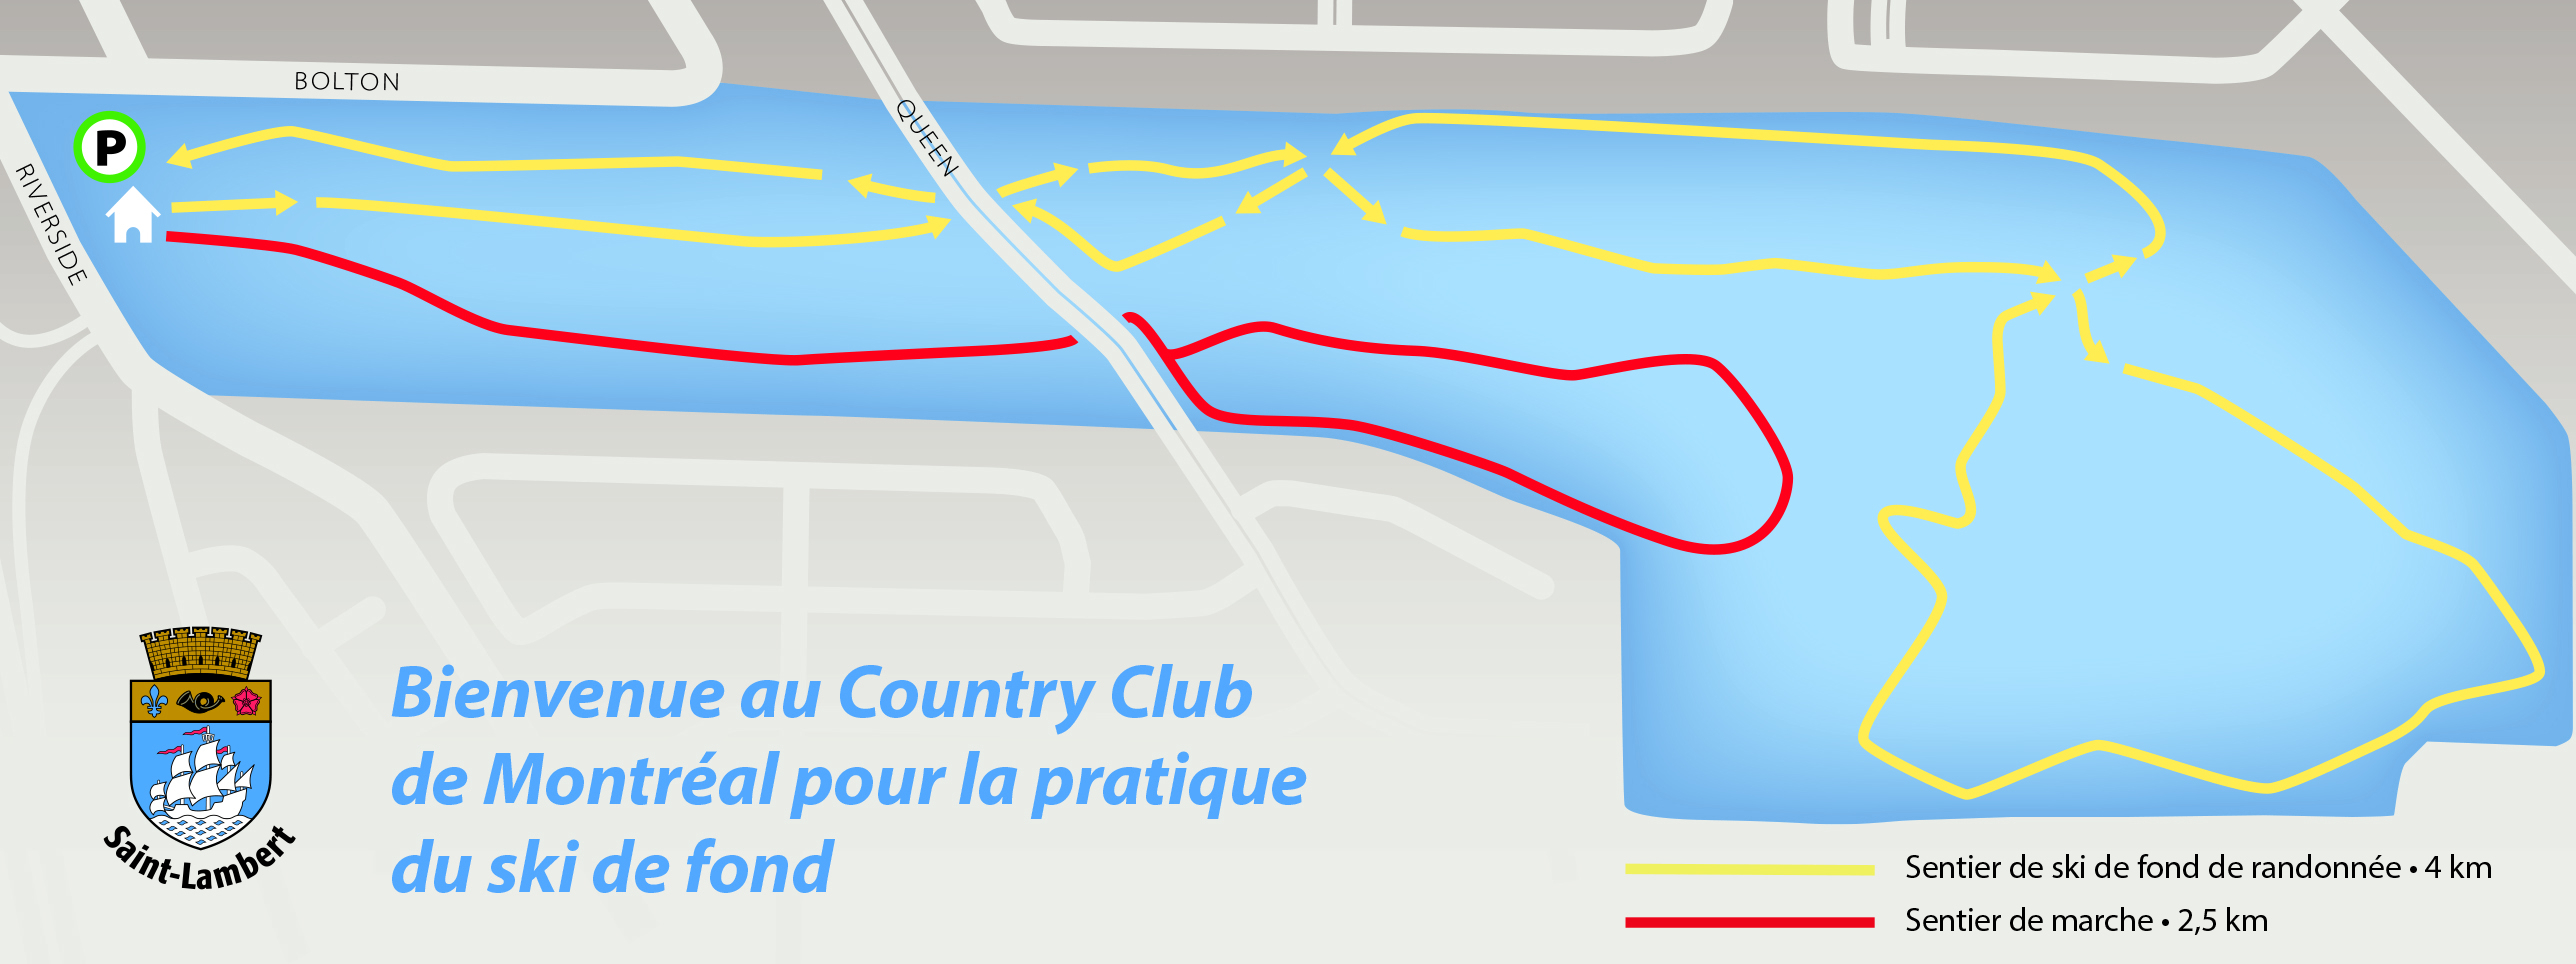 Plan du ski de fond au Country club de Montréal